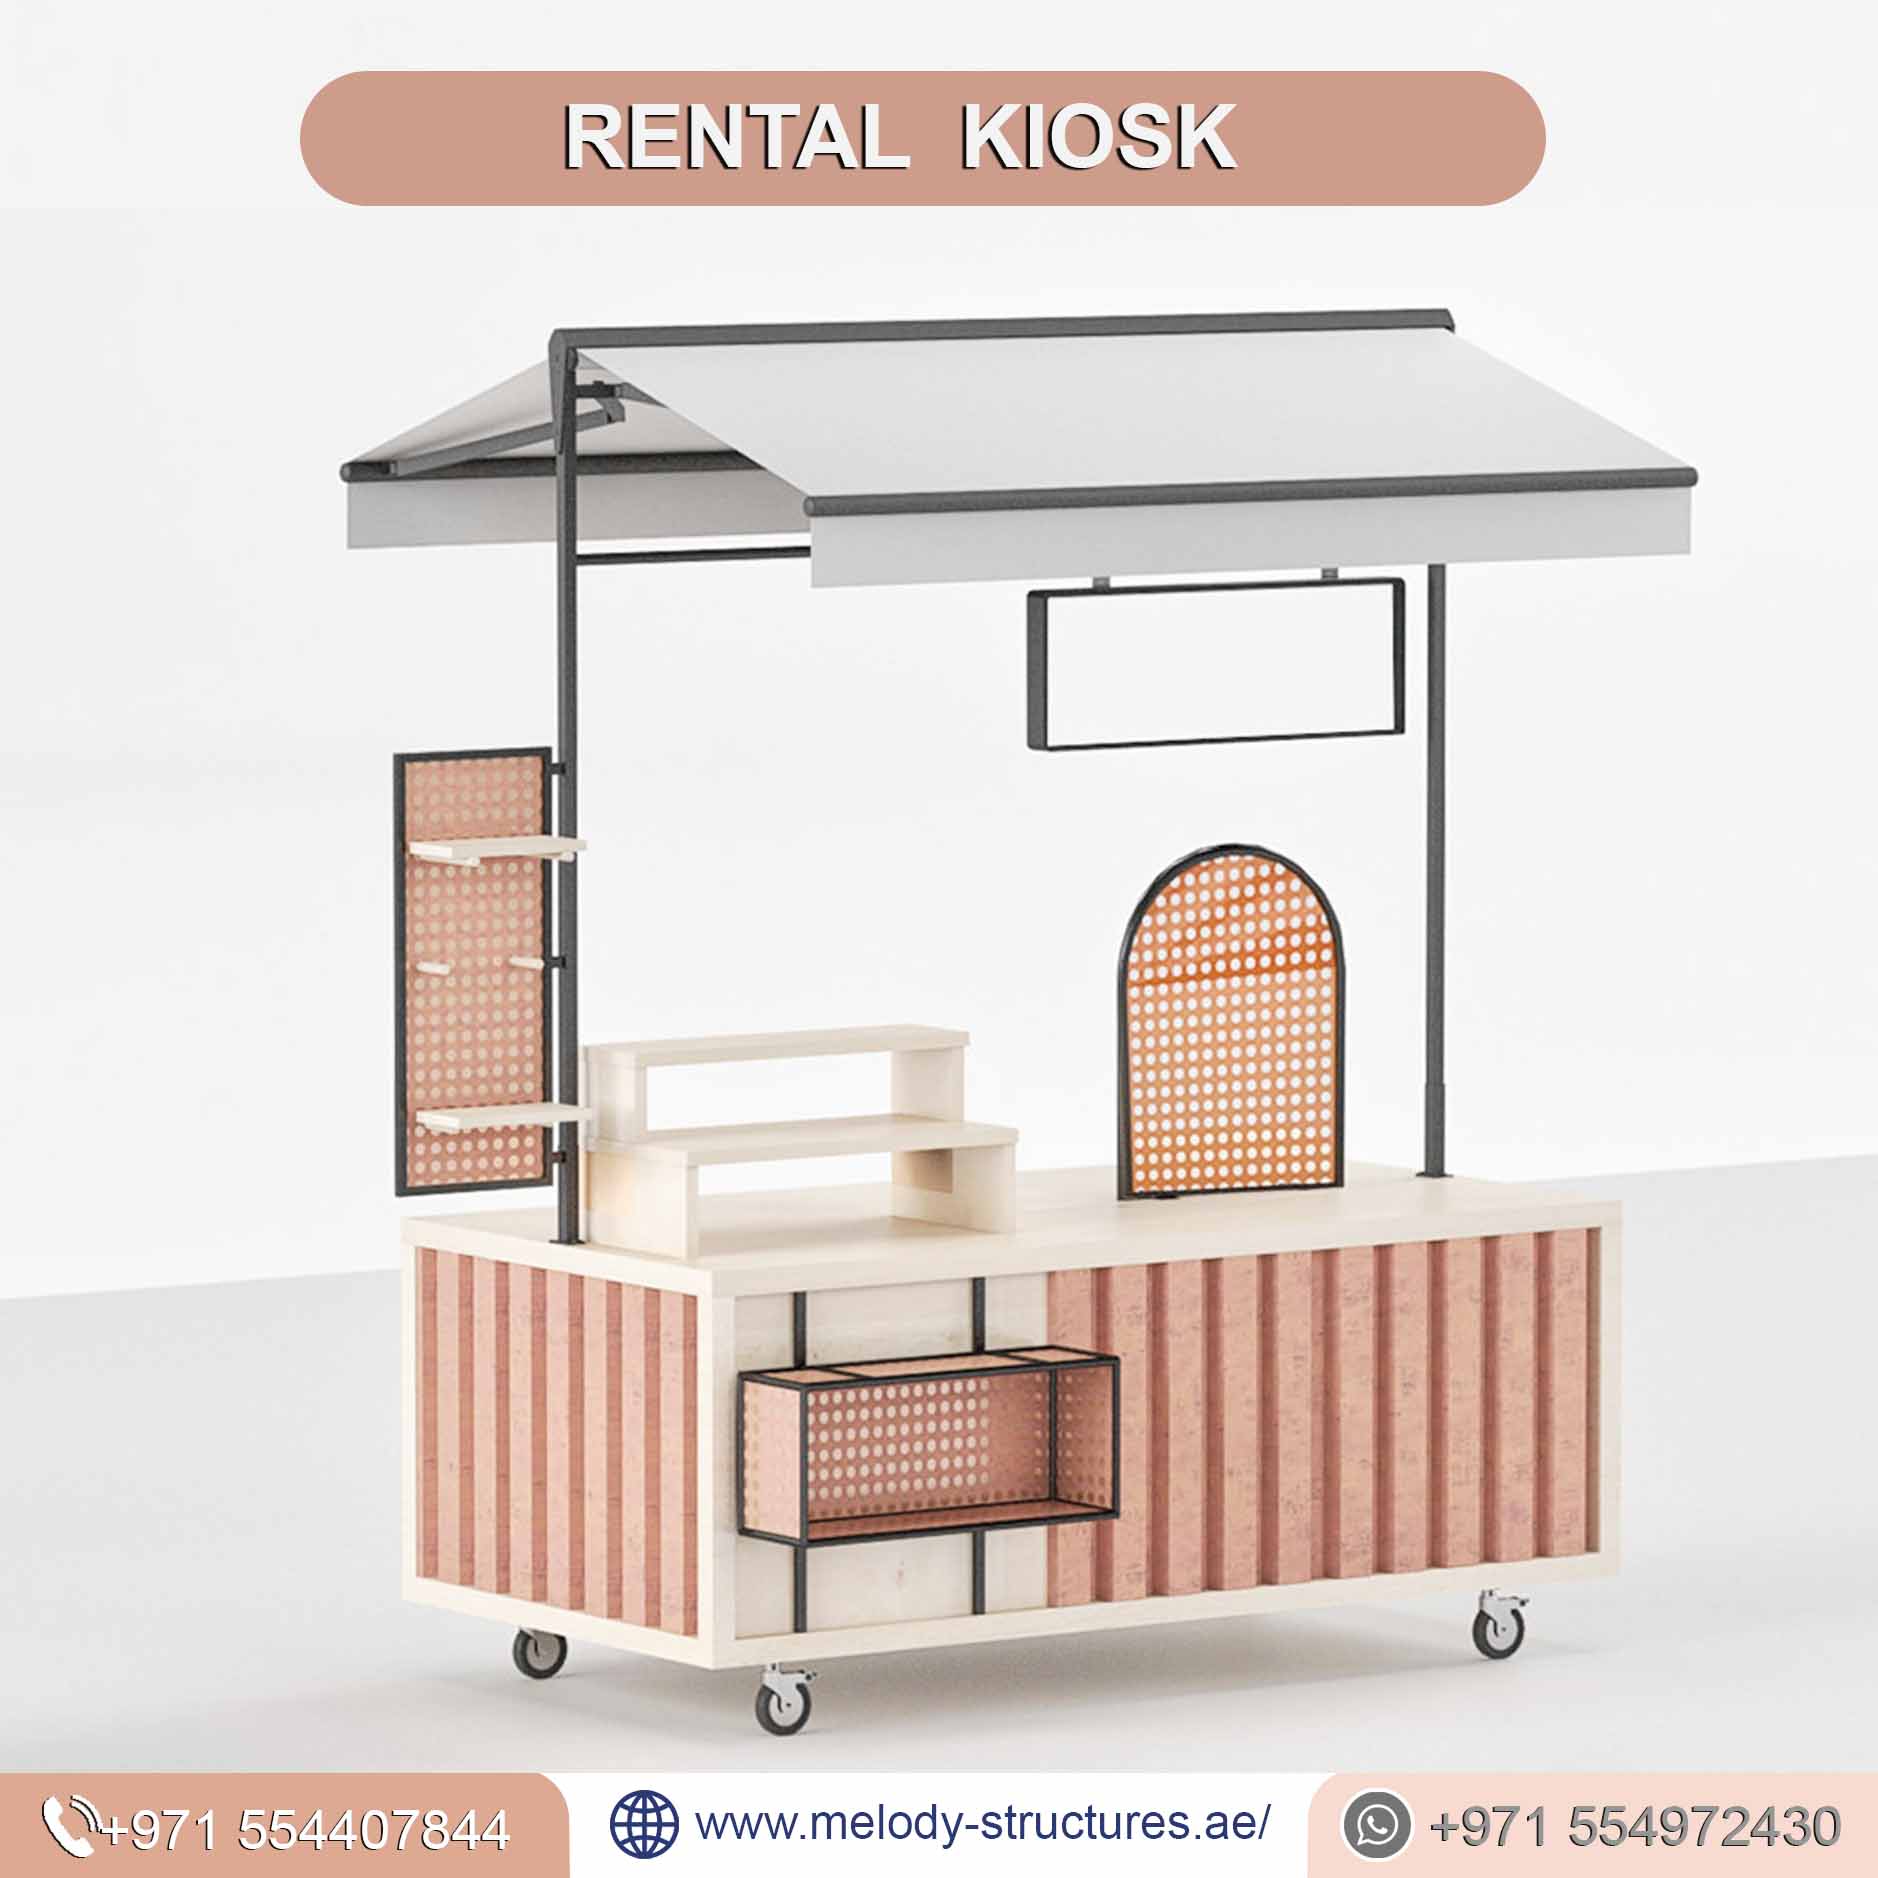 Kiosk Manufacturer in UAE | Rental kiosk Service in UAE